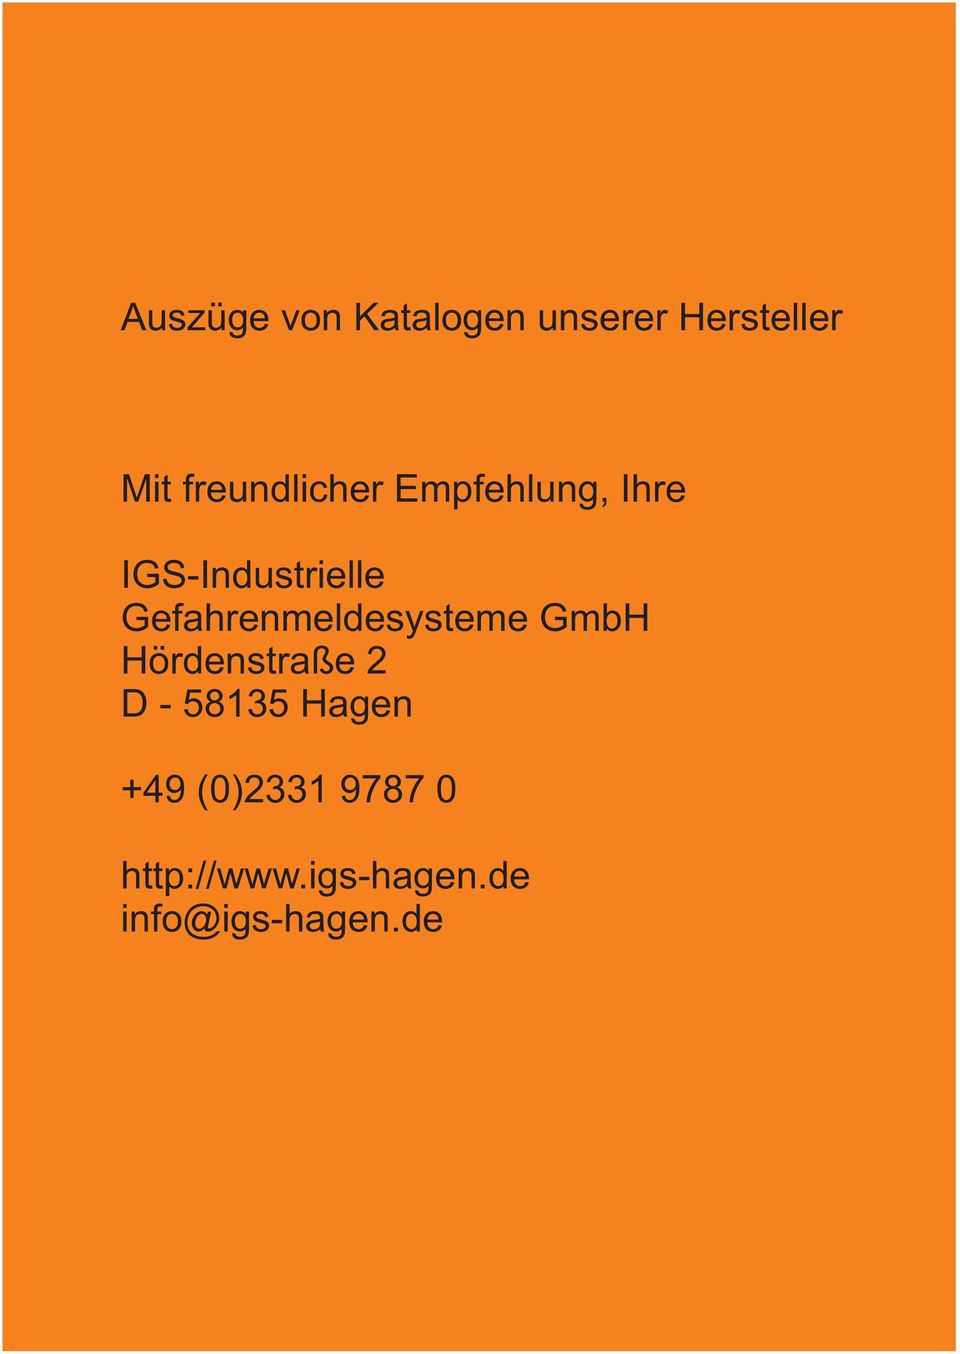 Gefahrenmeldesysteme GmbH Hördenstraße 2 D - 5835